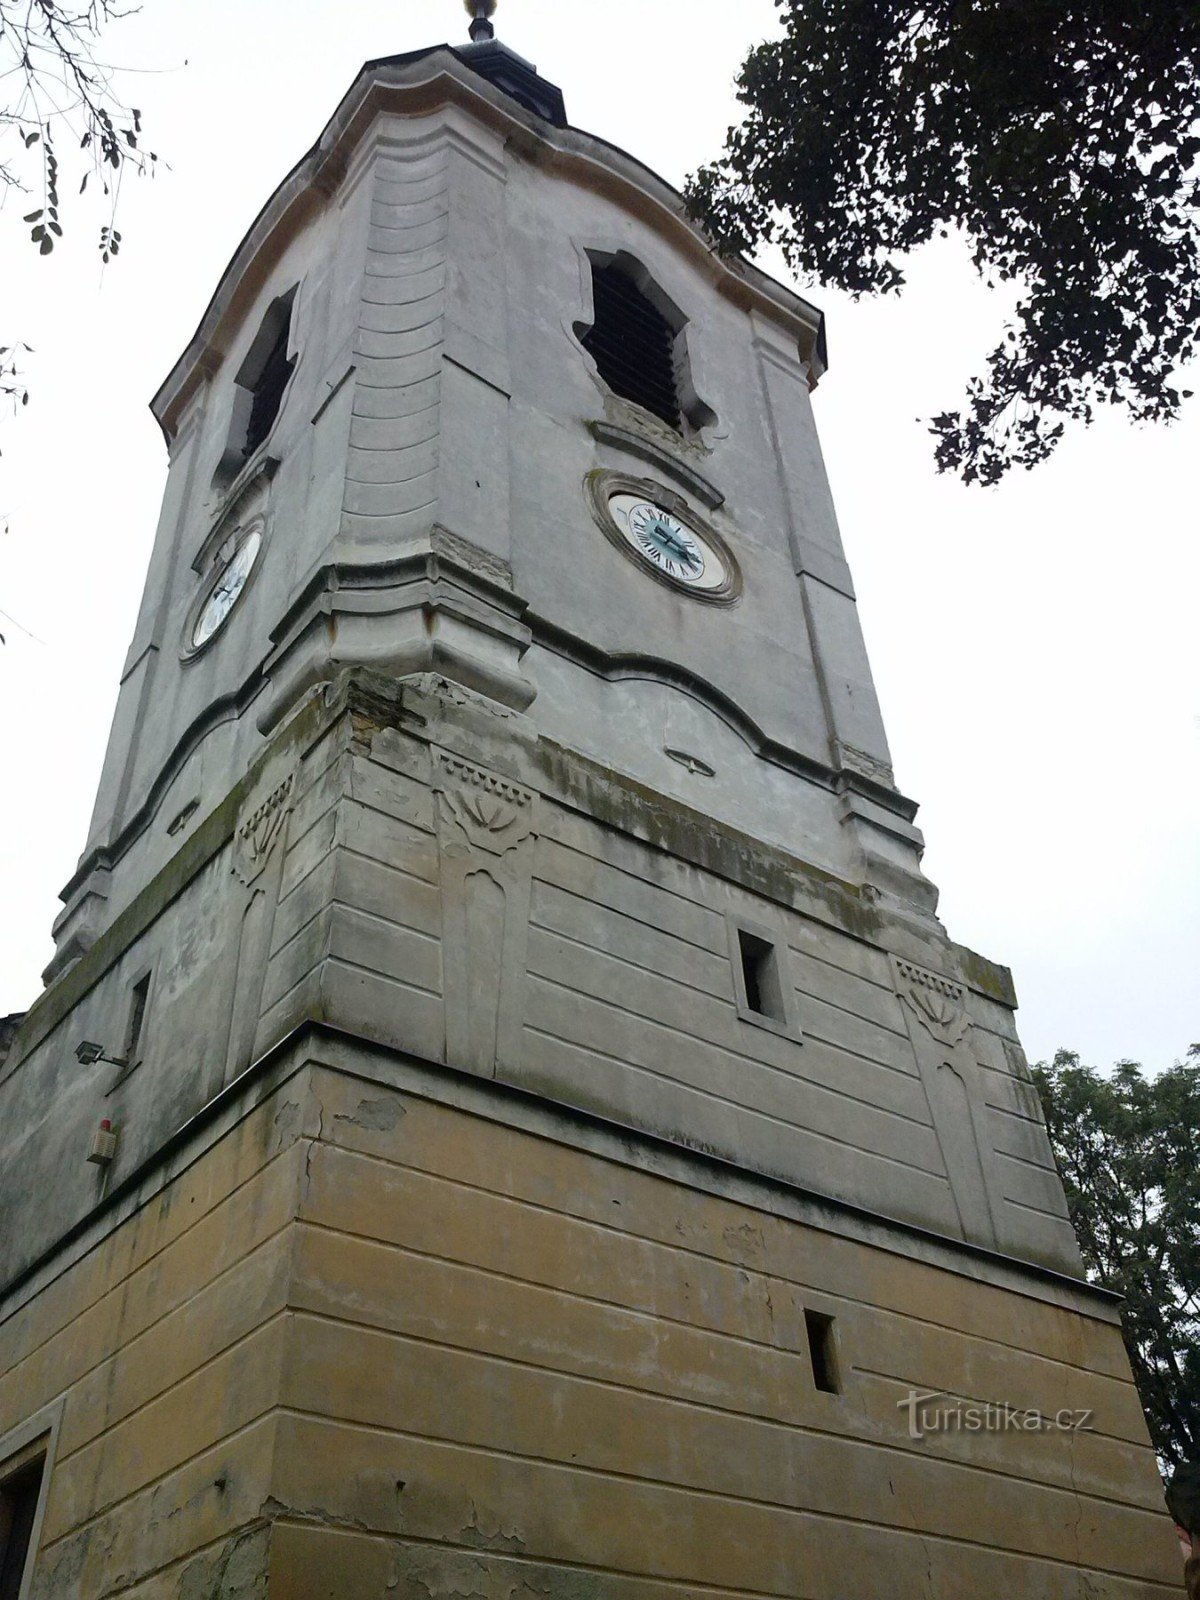 2. Wieża kościoła